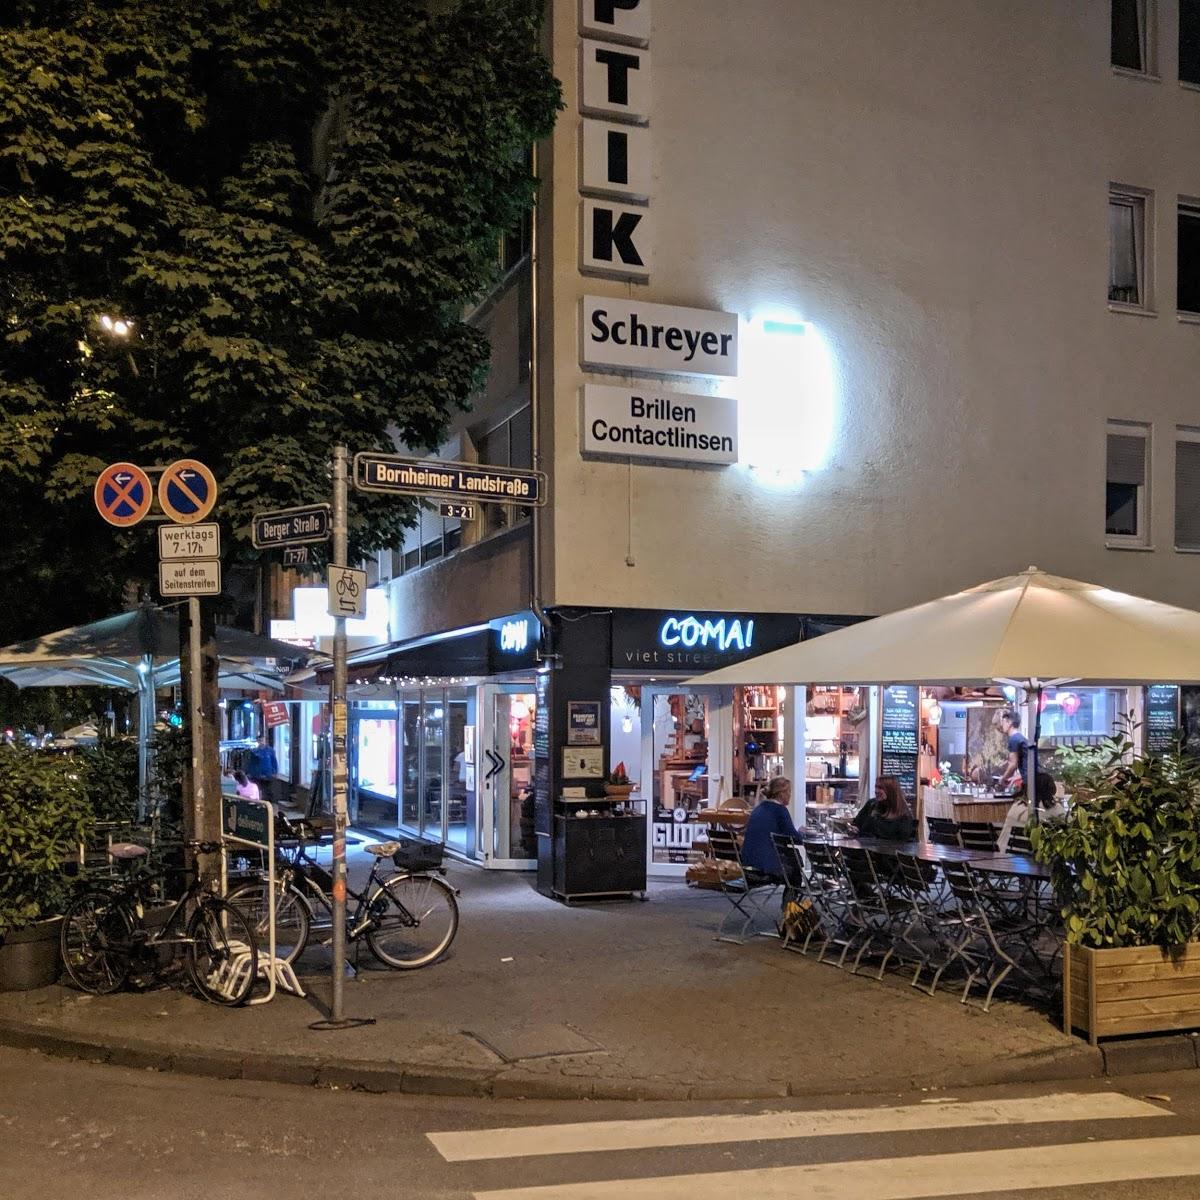 Restaurant "COMAI - viet street kitchen" in Frankfurt am Main